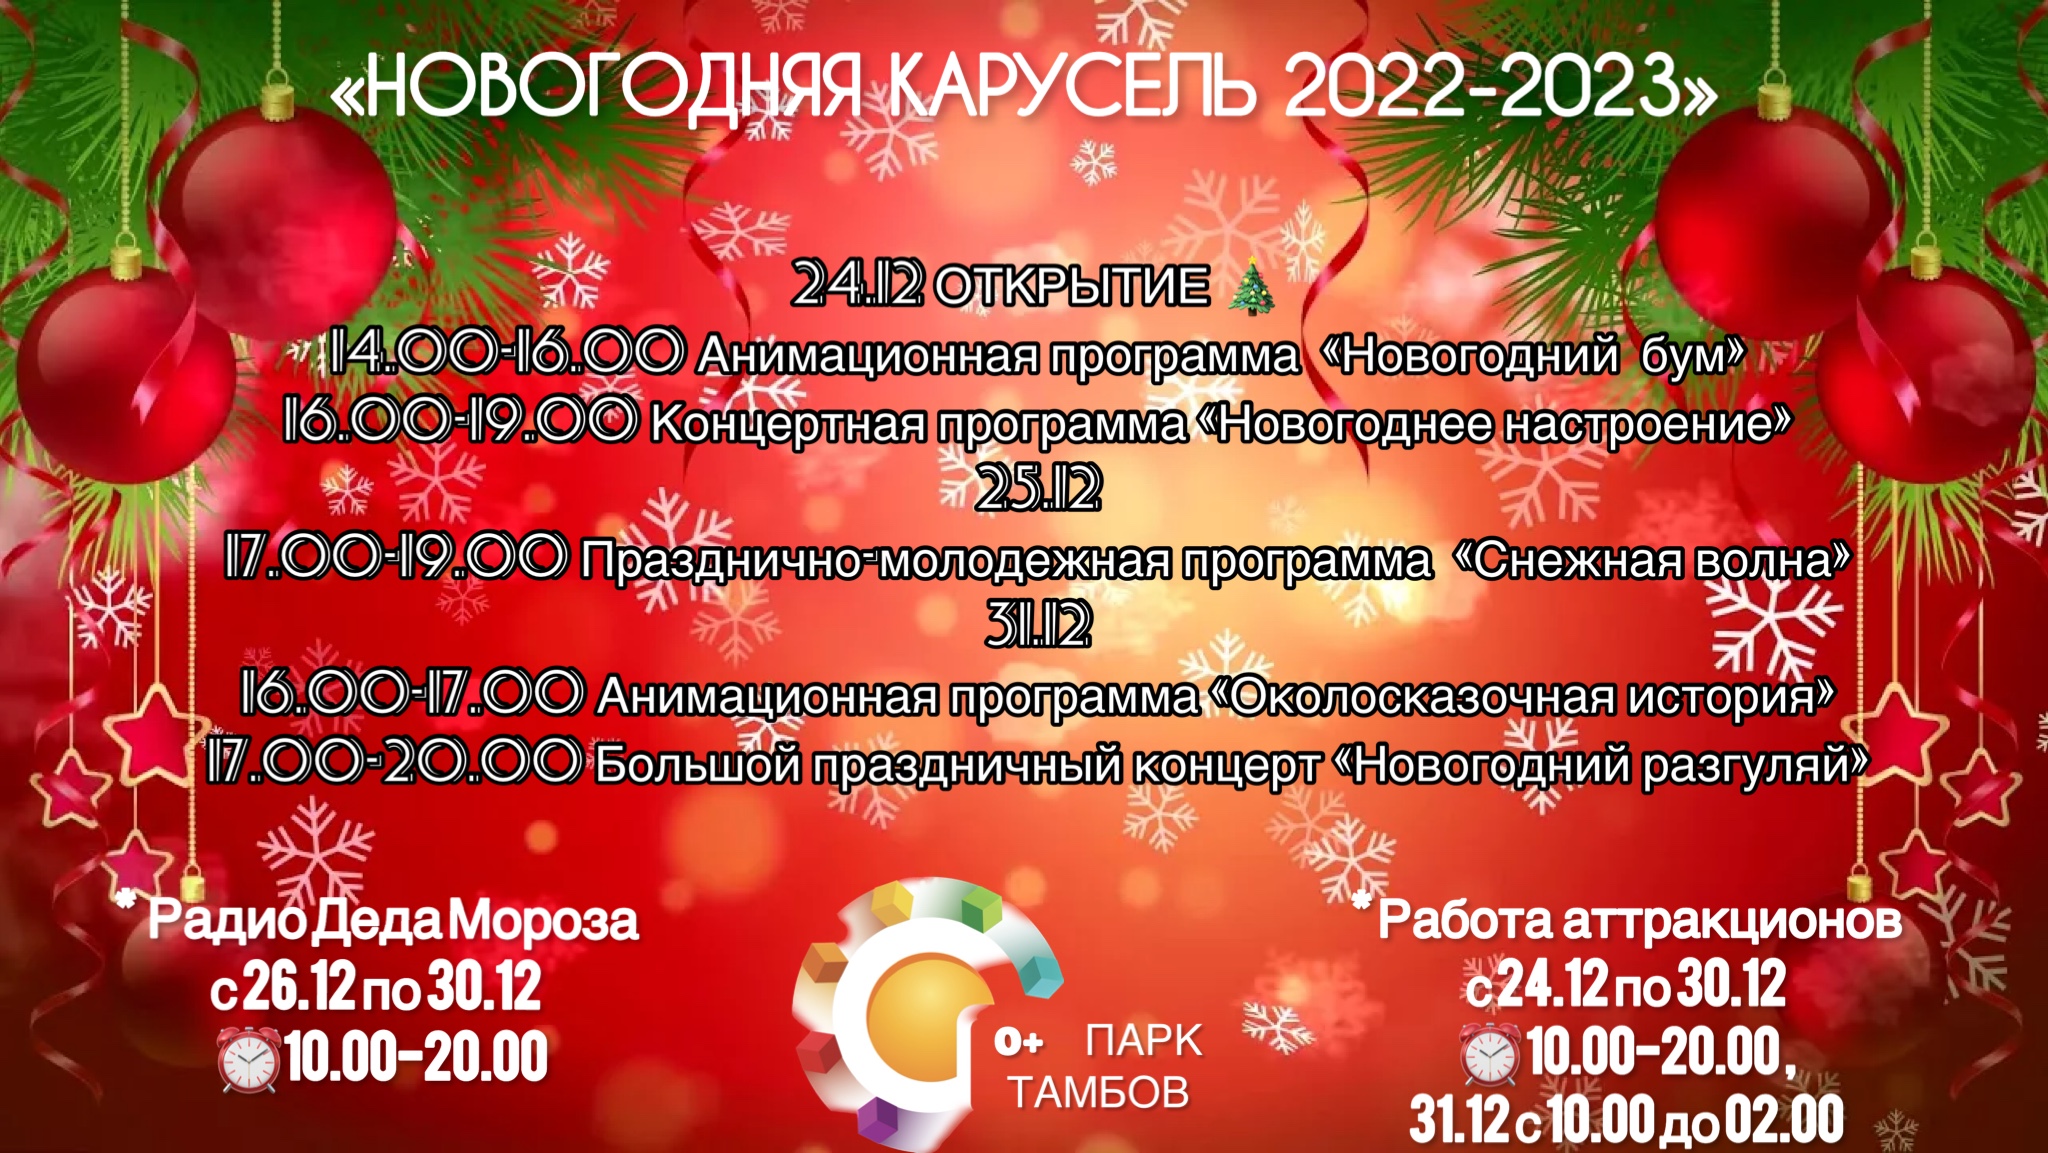 ПОДРОБНЕЕ О НОВОГОДНЕЙ ПОЛЯНЕ 2022-2023